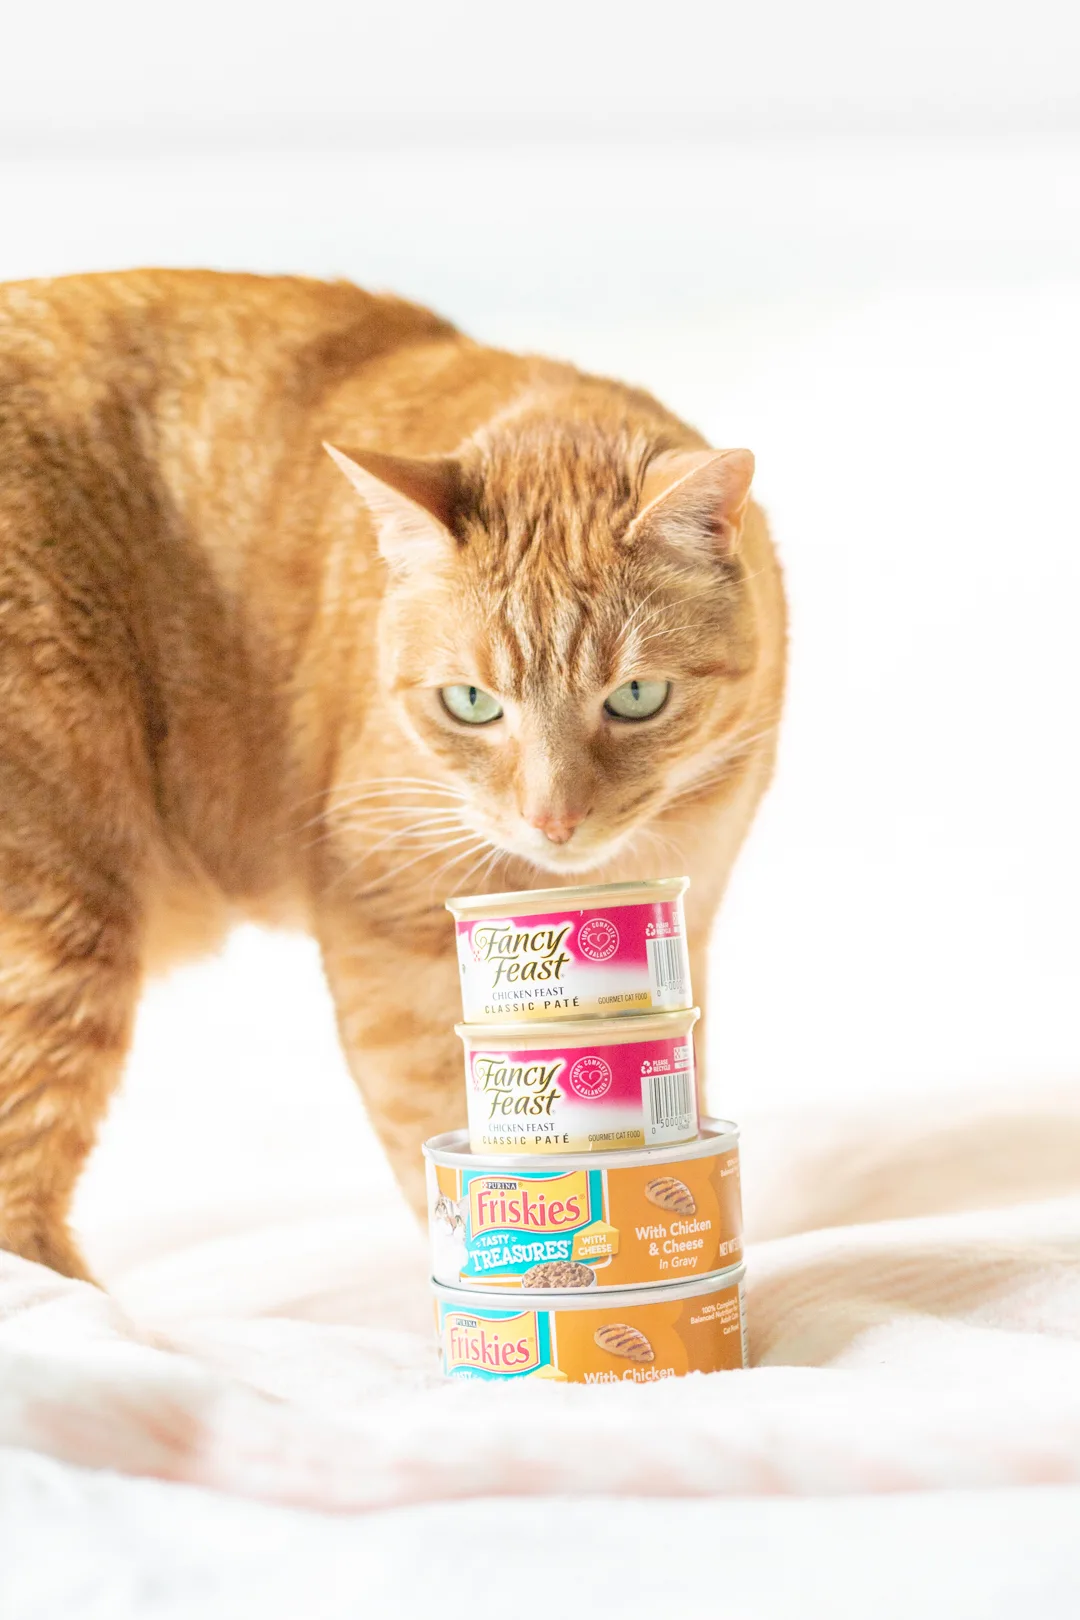 cat inspecting cat food